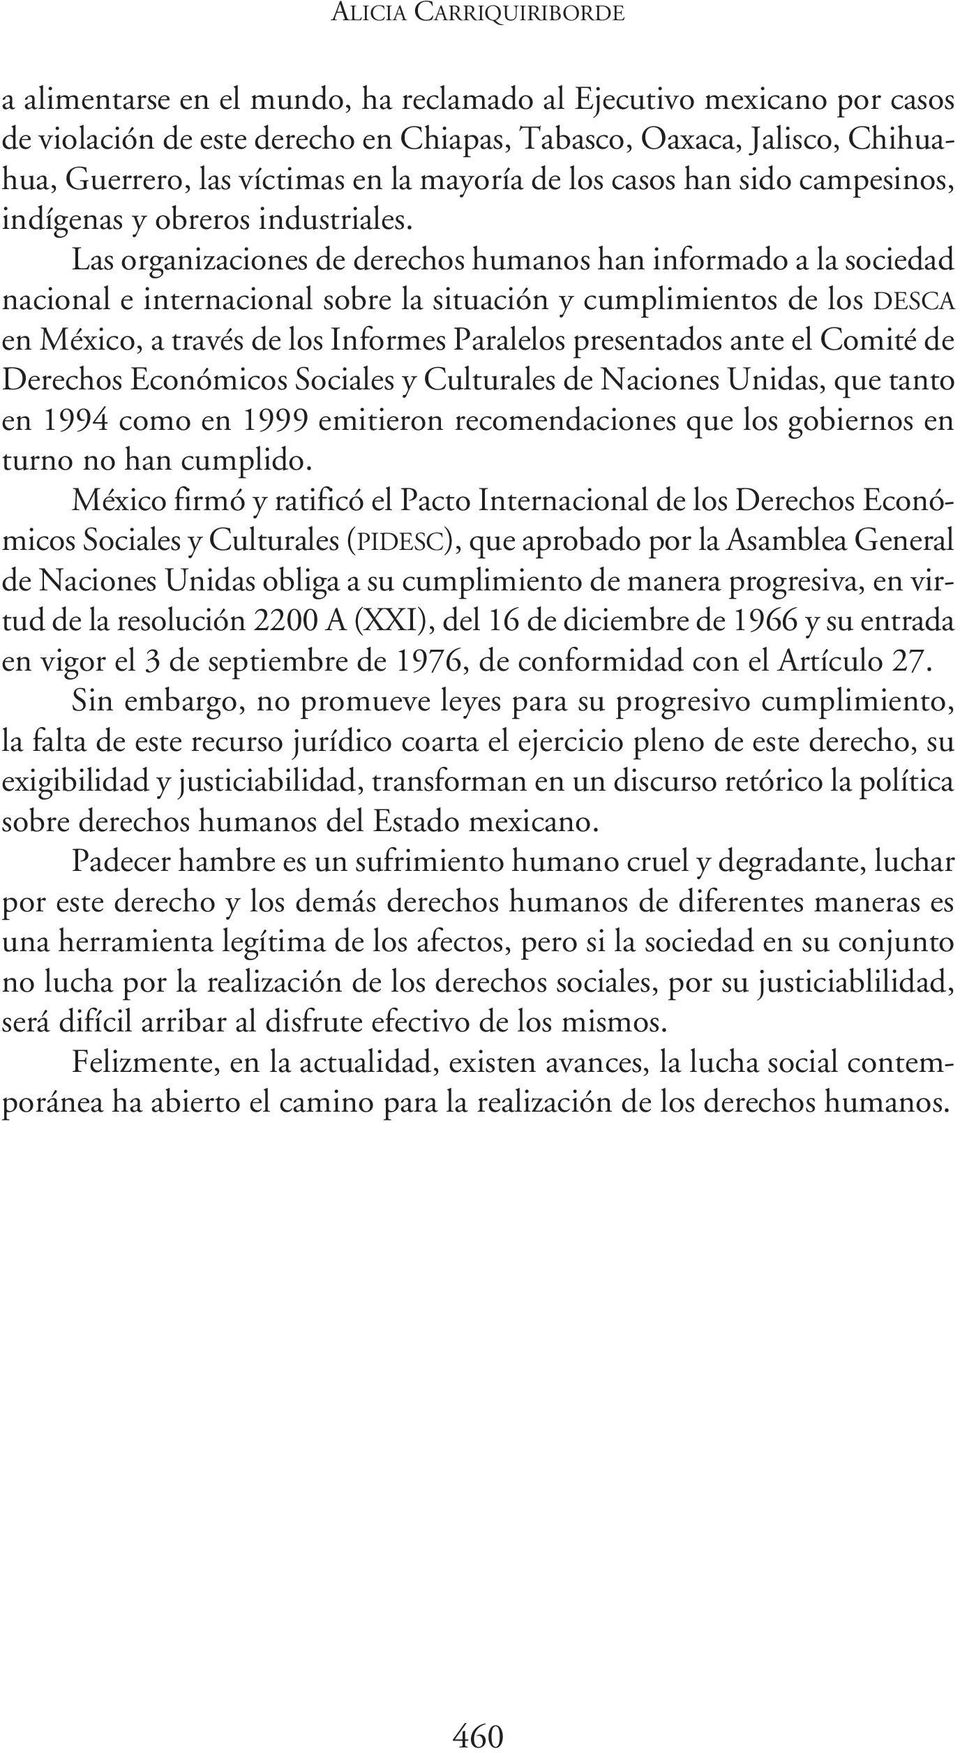 Las organizaciones de derechos humanos han informado a la sociedad nacional e internacional sobre la situación y cumplimientos de los DESCA en México, a través de los Informes Paralelos presentados